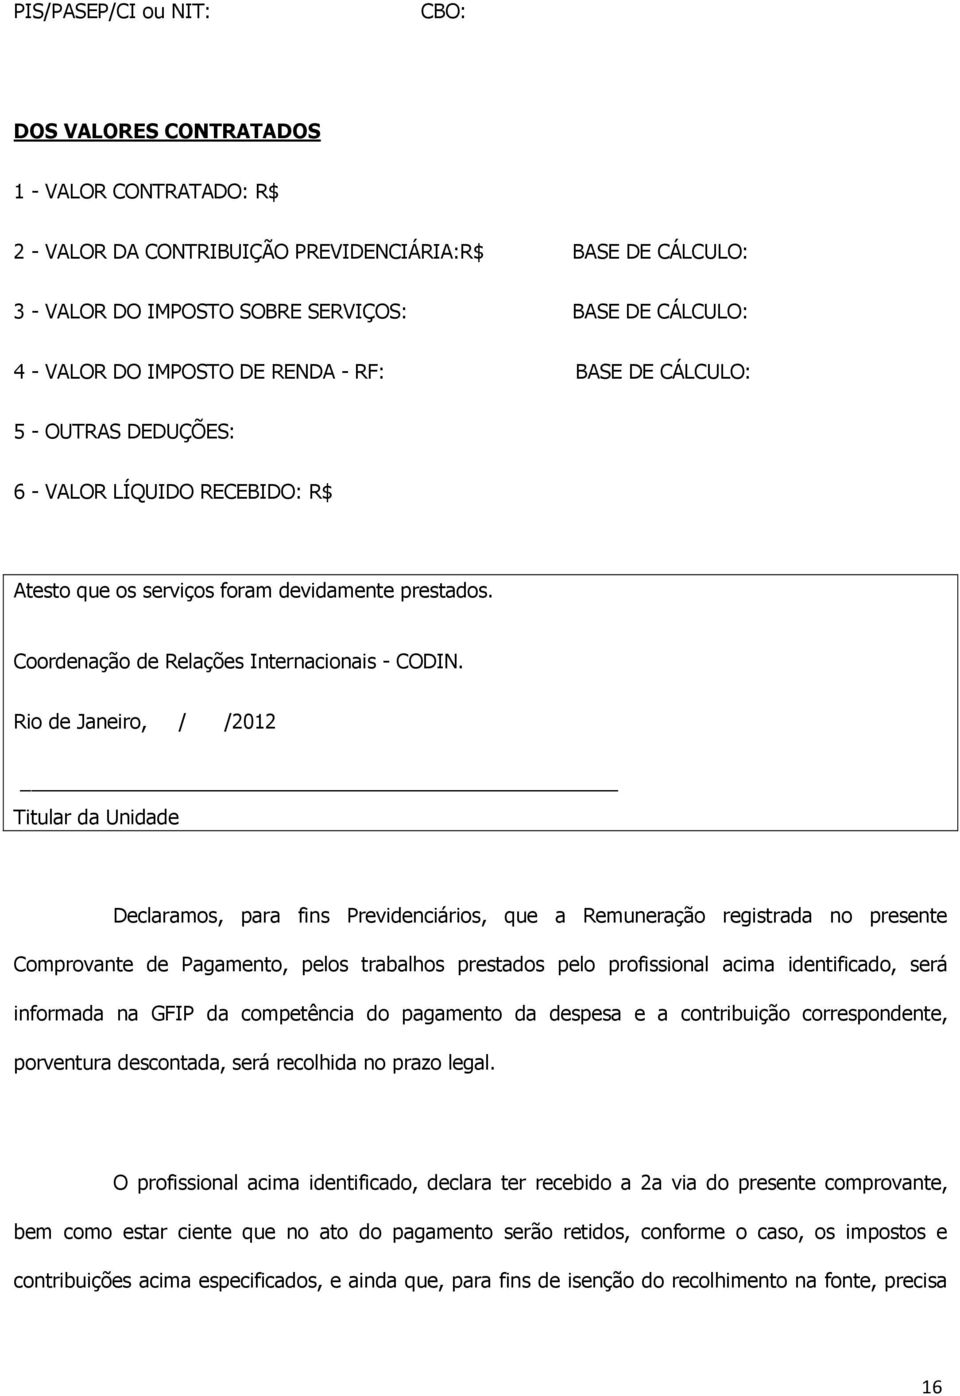 Rio de Janeiro, / /2012 Titular da Unidade Declaramos, para fins Previdenciários, que a Remuneração registrada no presente Comprovante de Pagamento, pelos trabalhos prestados pelo profissional acima